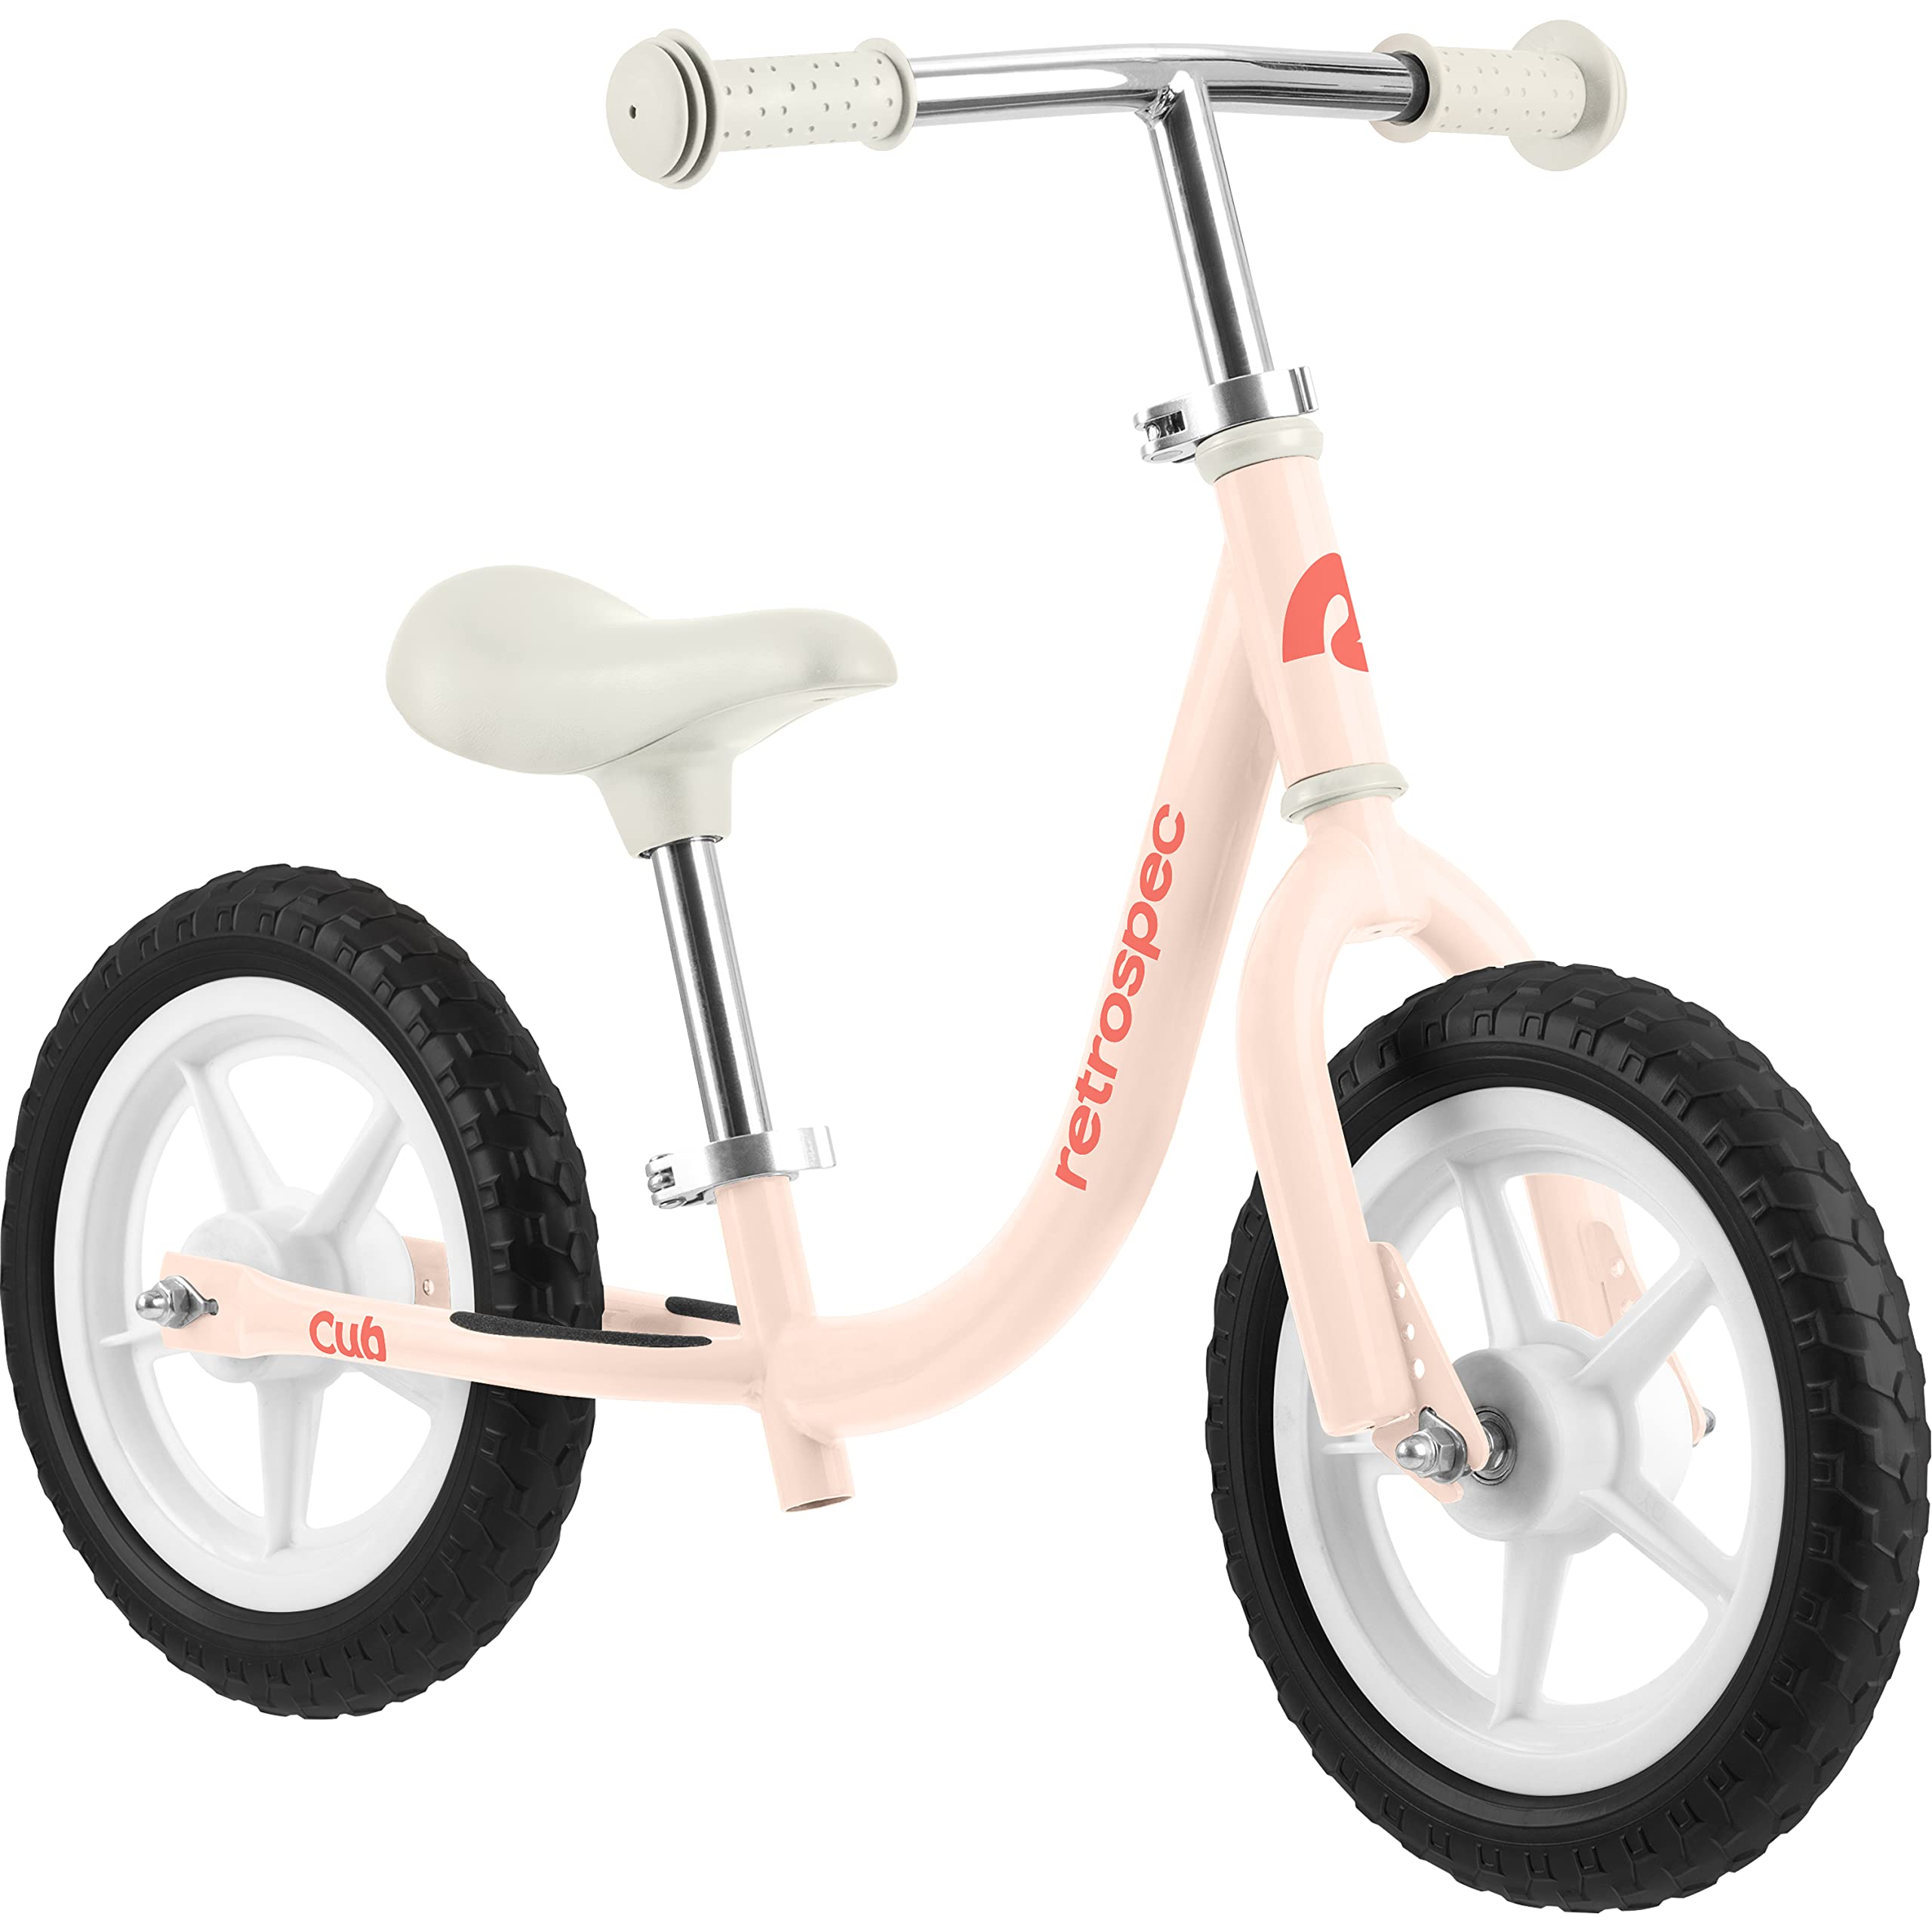 Retrospec Cub 幼儿 12 英寸平衡自行车，18 个月 - 3 岁，无踏板初学者儿童自行车，适合女孩和男孩，防漏气轮胎、可调节座椅和耐用框架